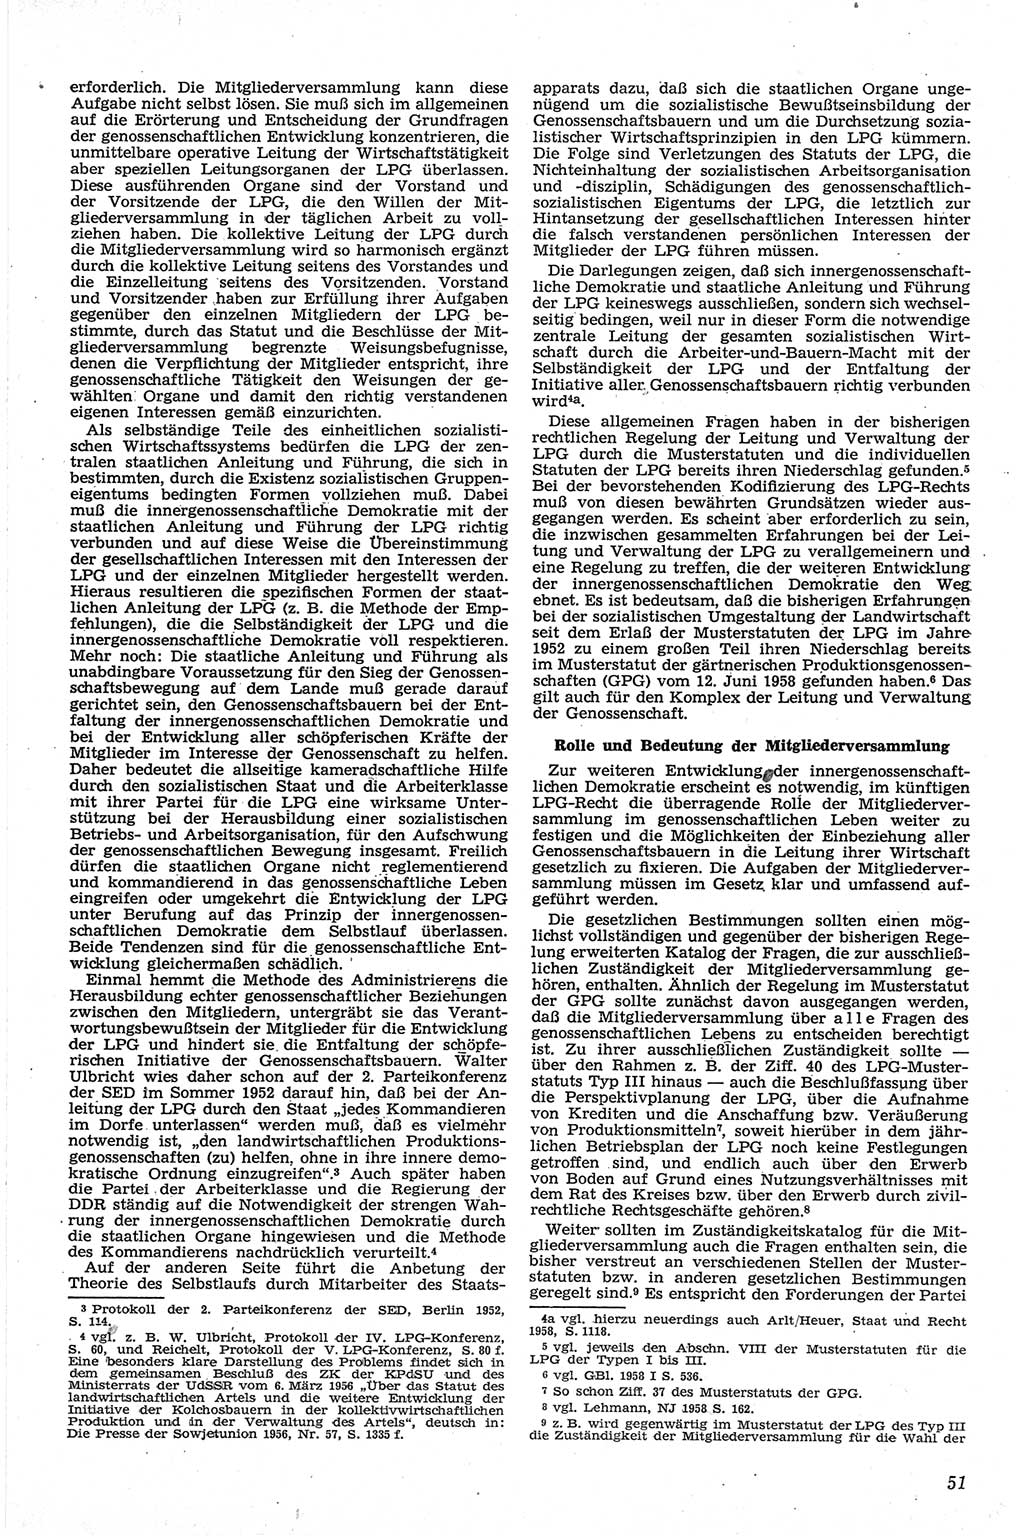 Neue Justiz (NJ), Zeitschrift für Recht und Rechtswissenschaft [Deutsche Demokratische Republik (DDR)], 13. Jahrgang 1959, Seite 51 (NJ DDR 1959, S. 51)